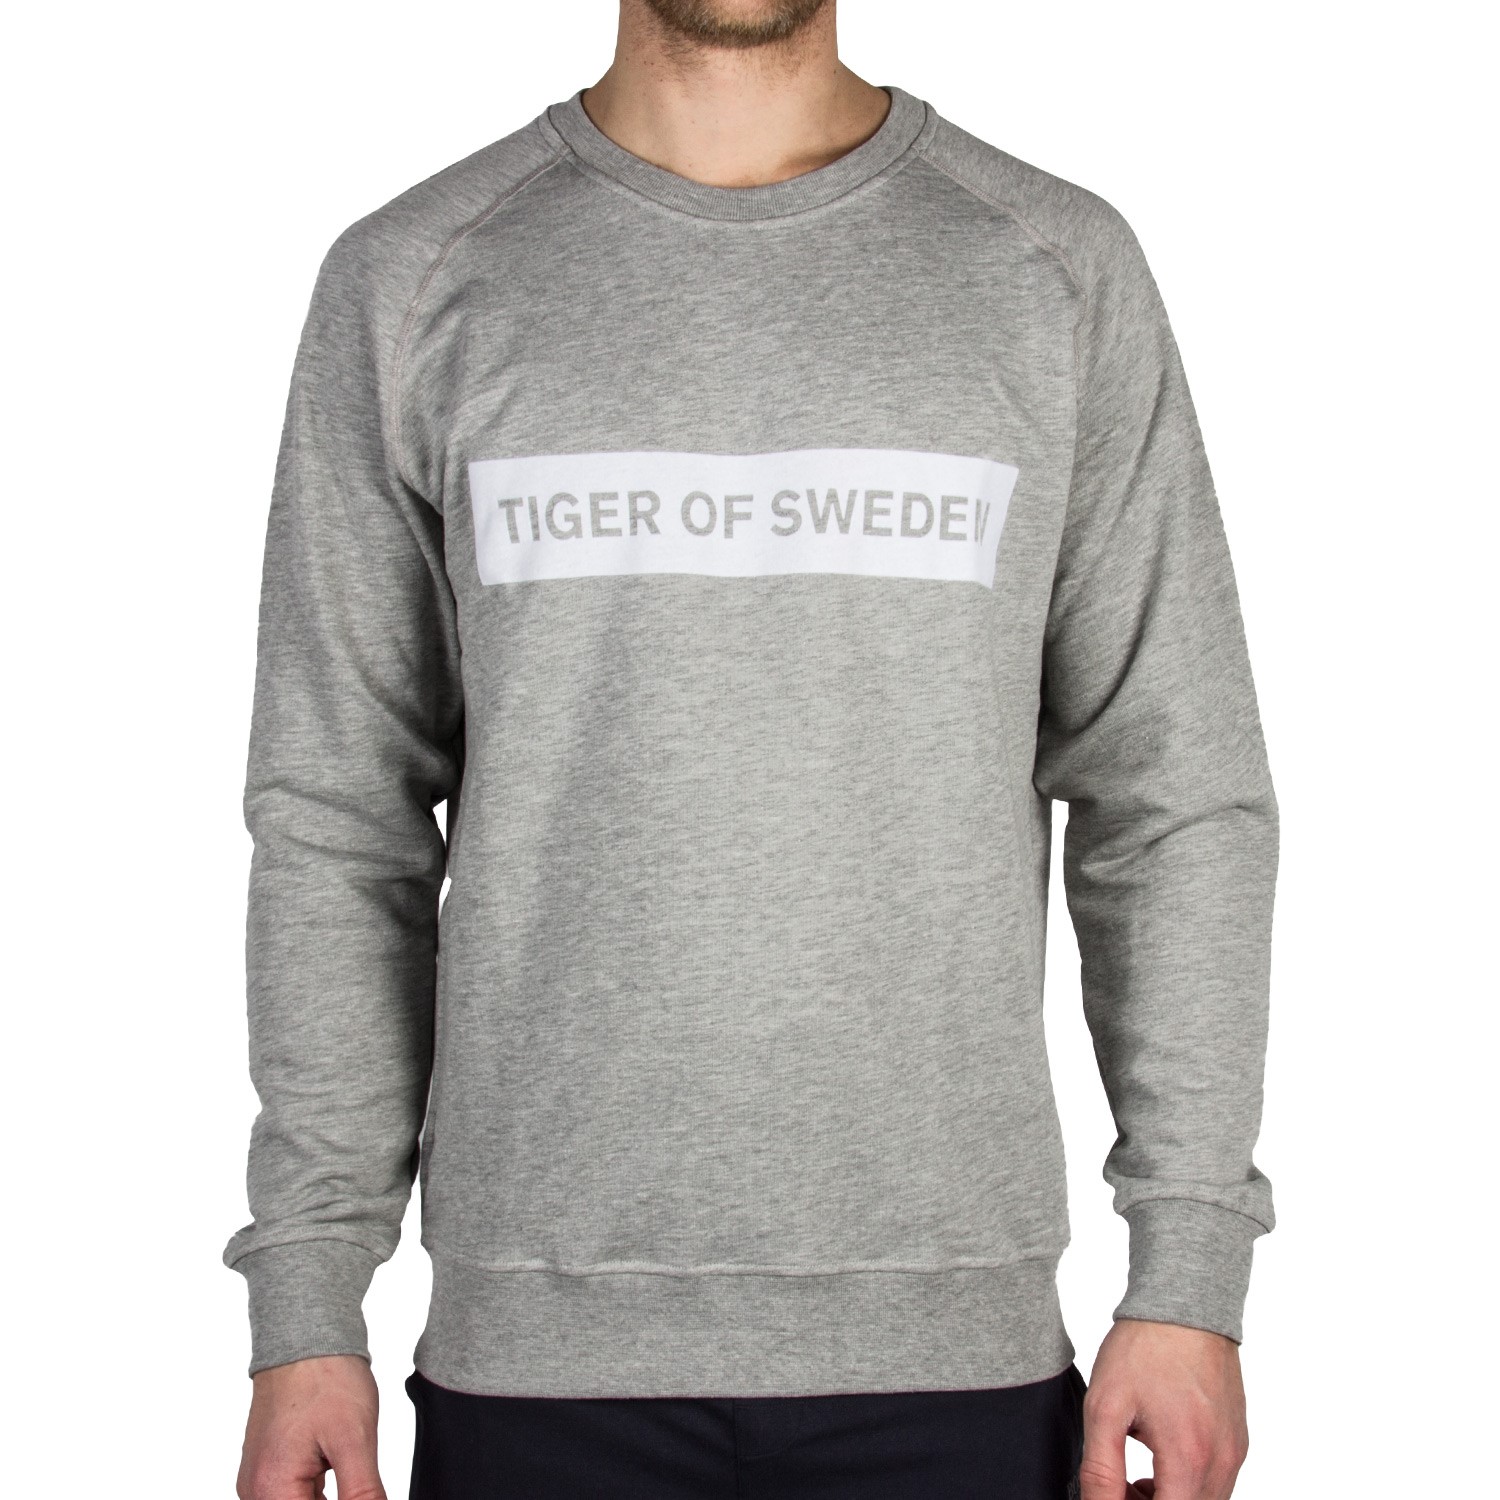 Tiger of Sweden Roussel Sweatshirt